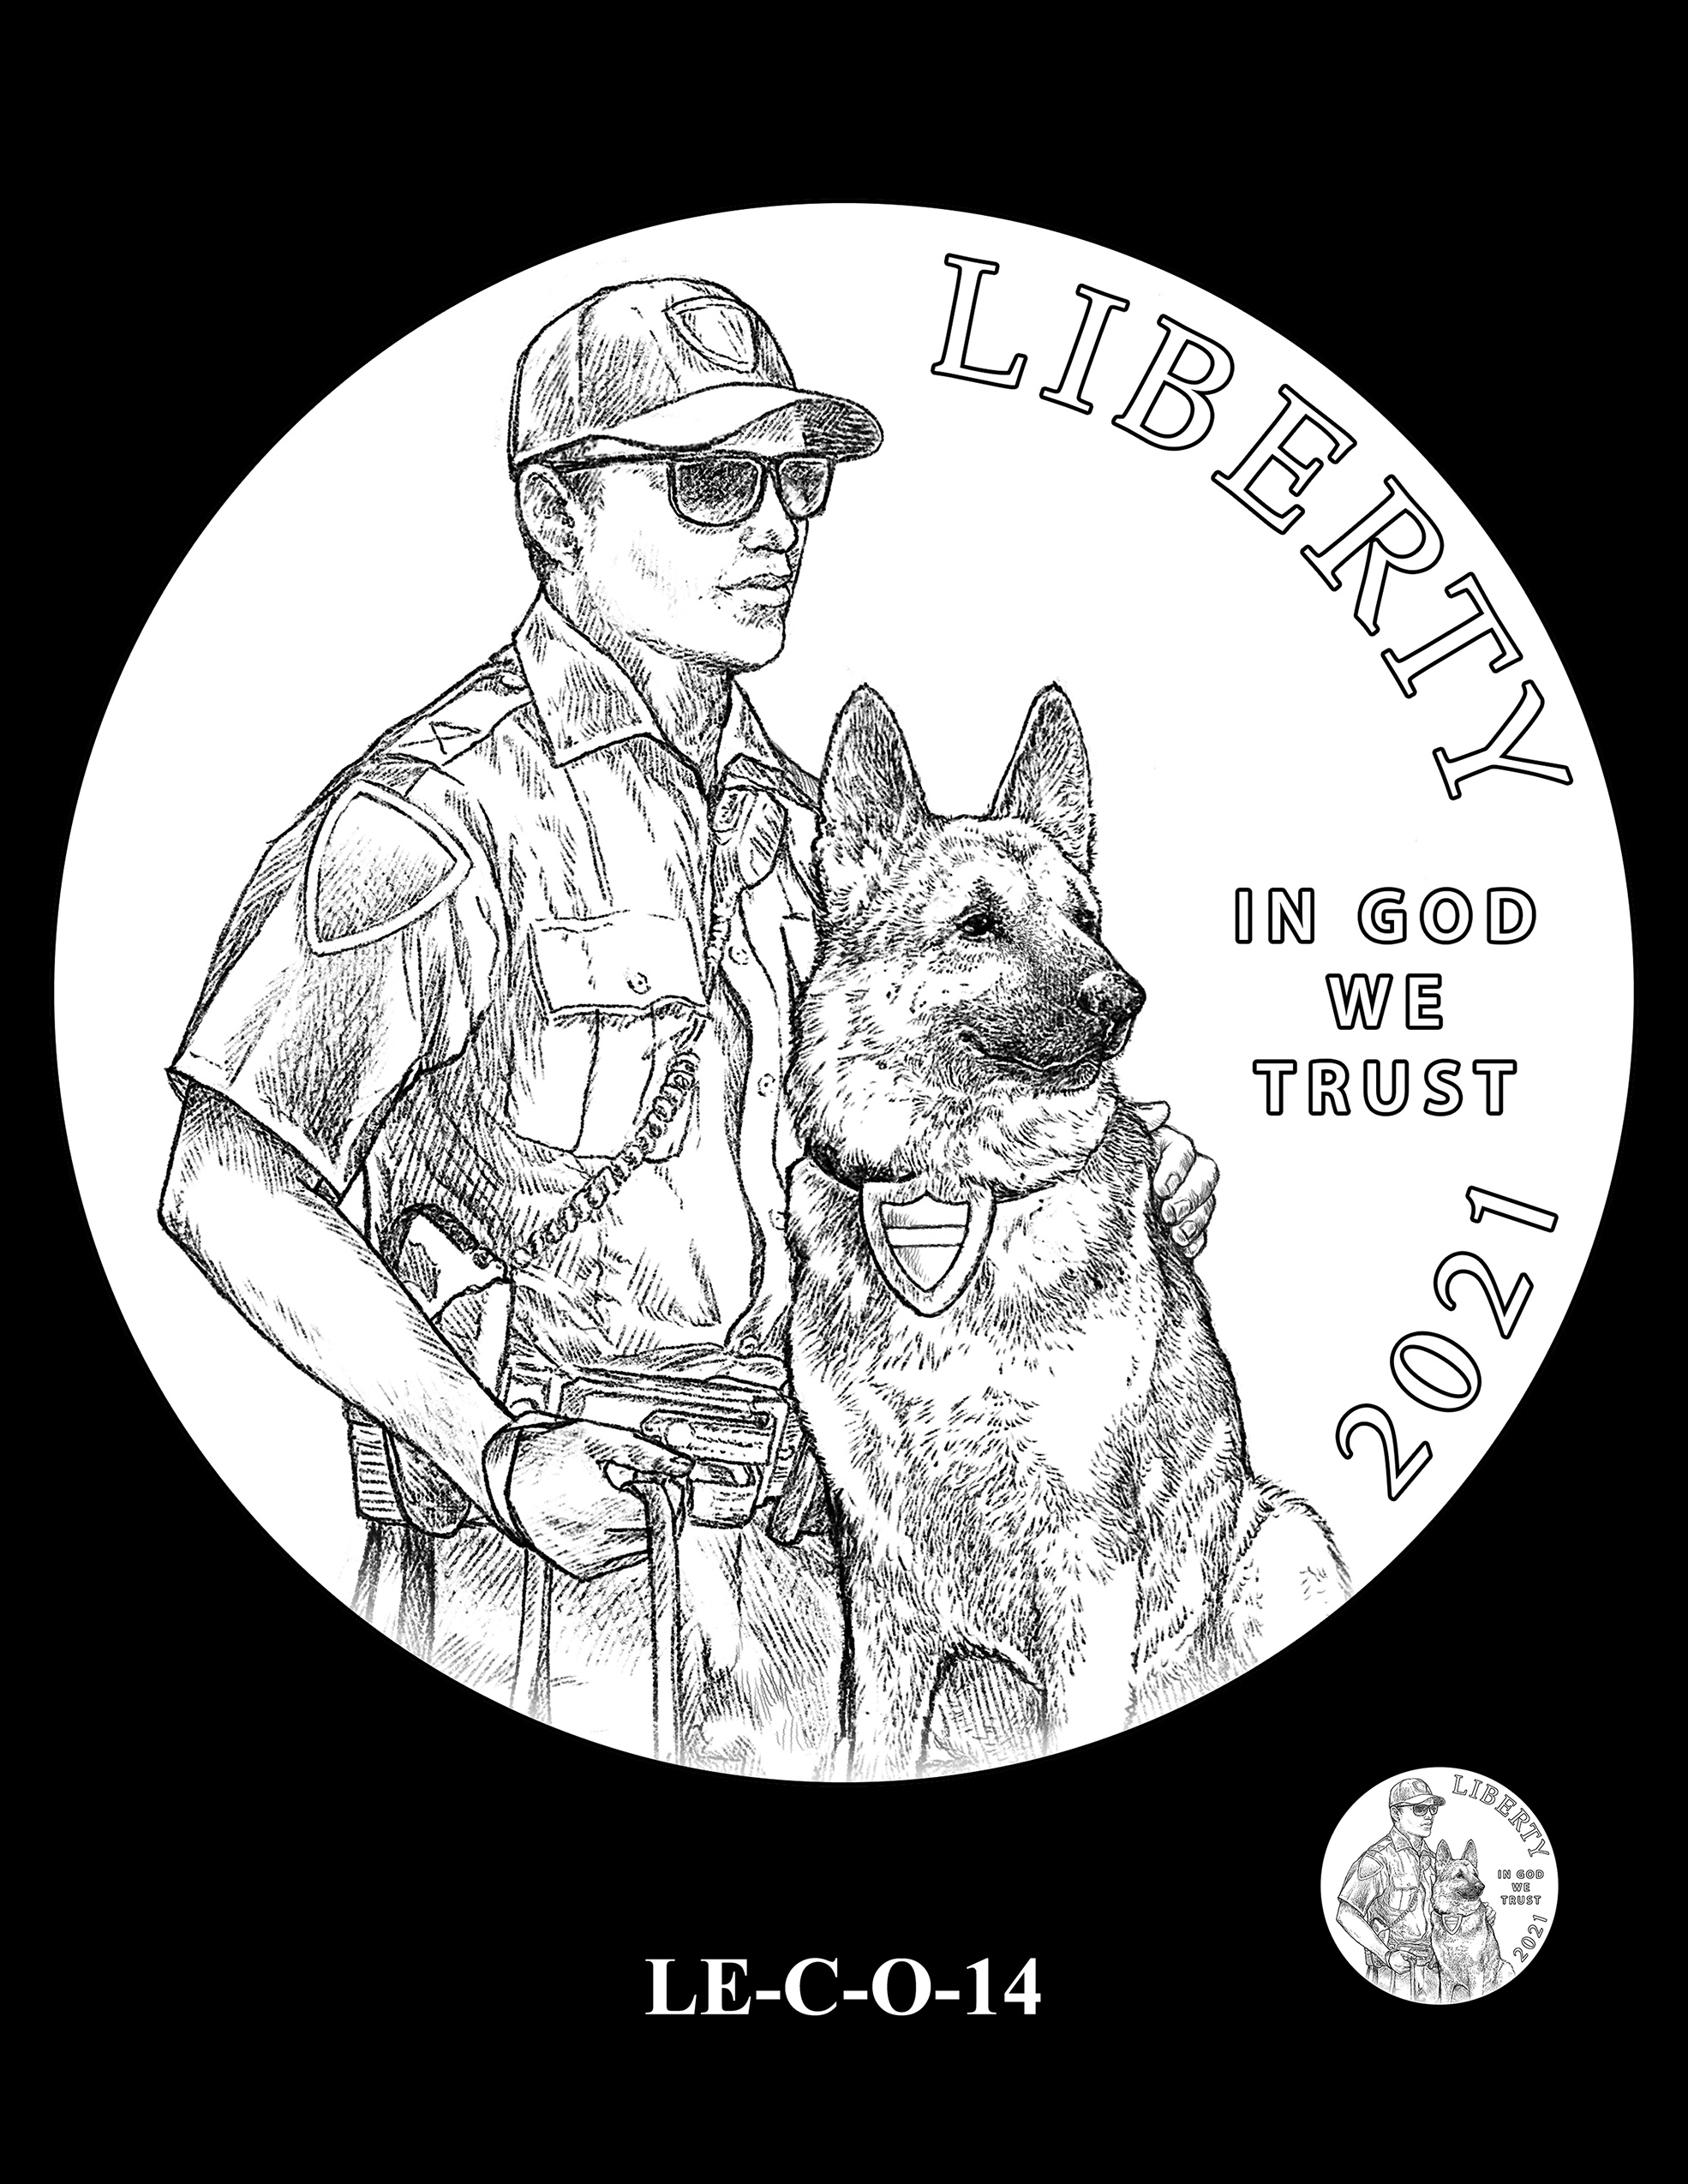 LE-C-O-14 -- National Law Enforcement Museum Commemorative Coin Program